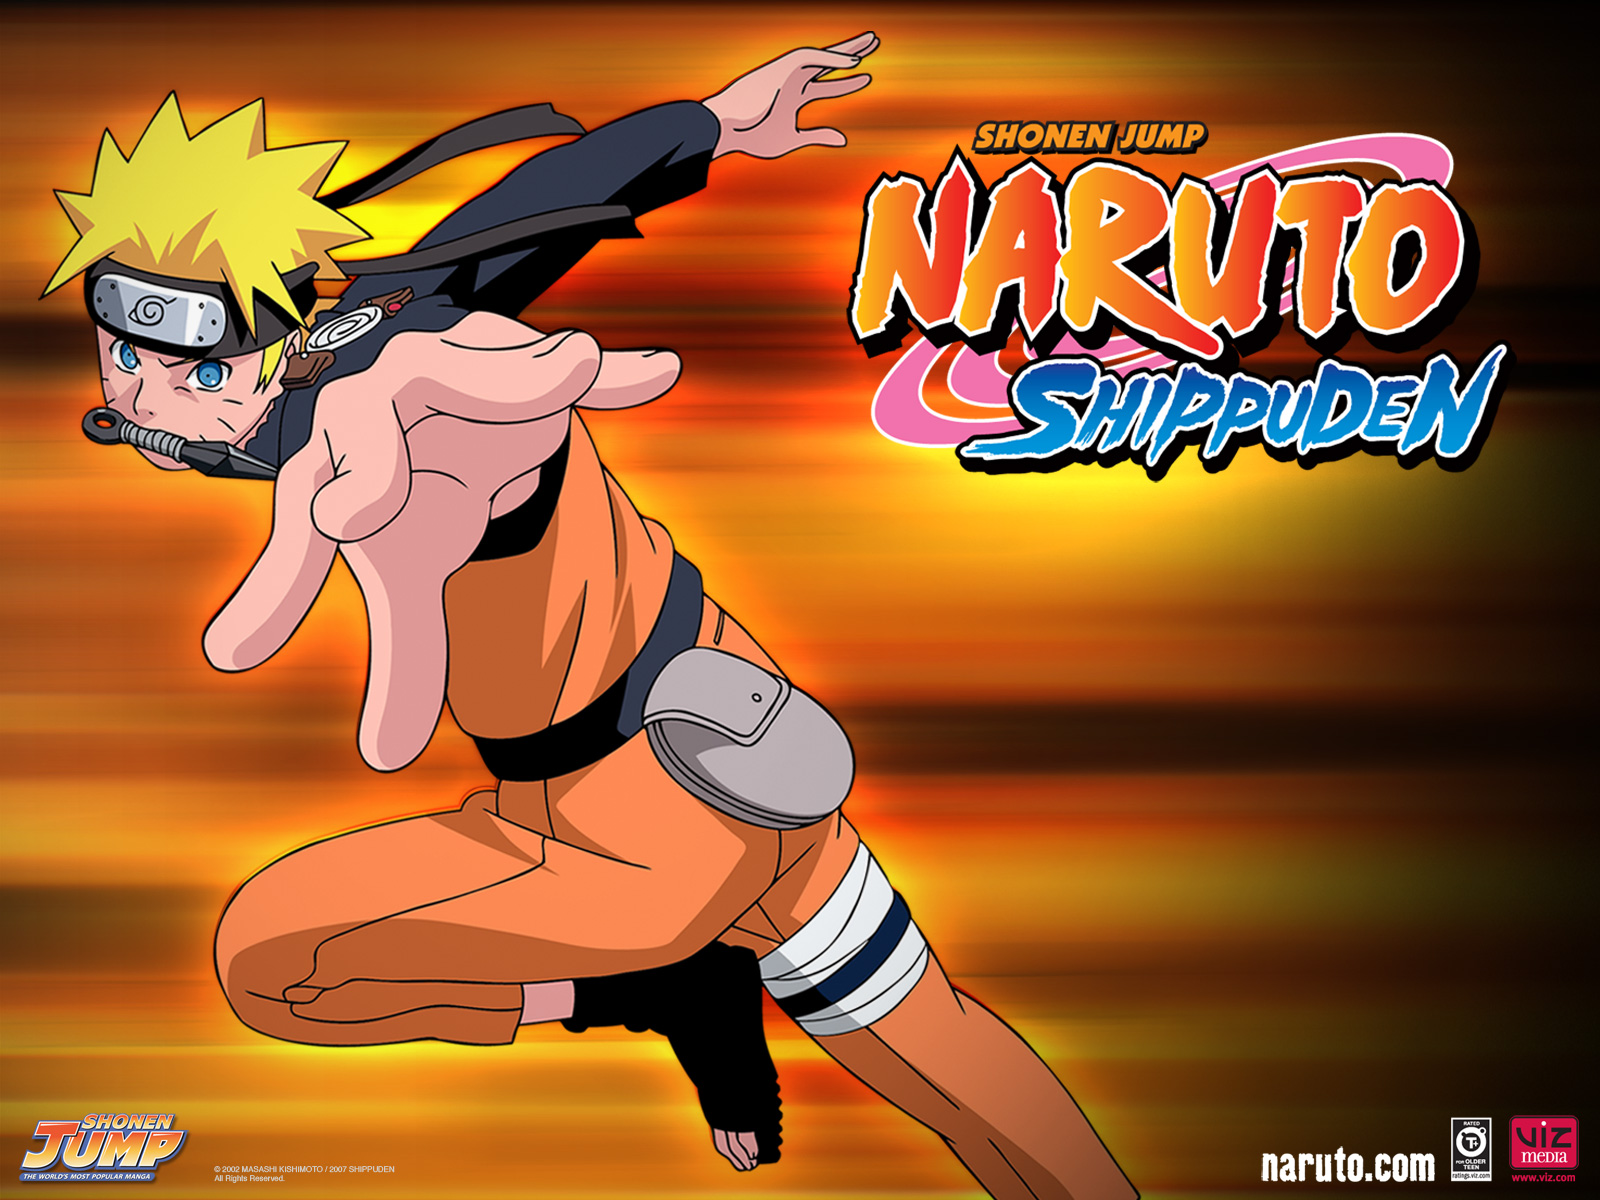 1. "Naruto Uzumaki" from Naruto - wide 11